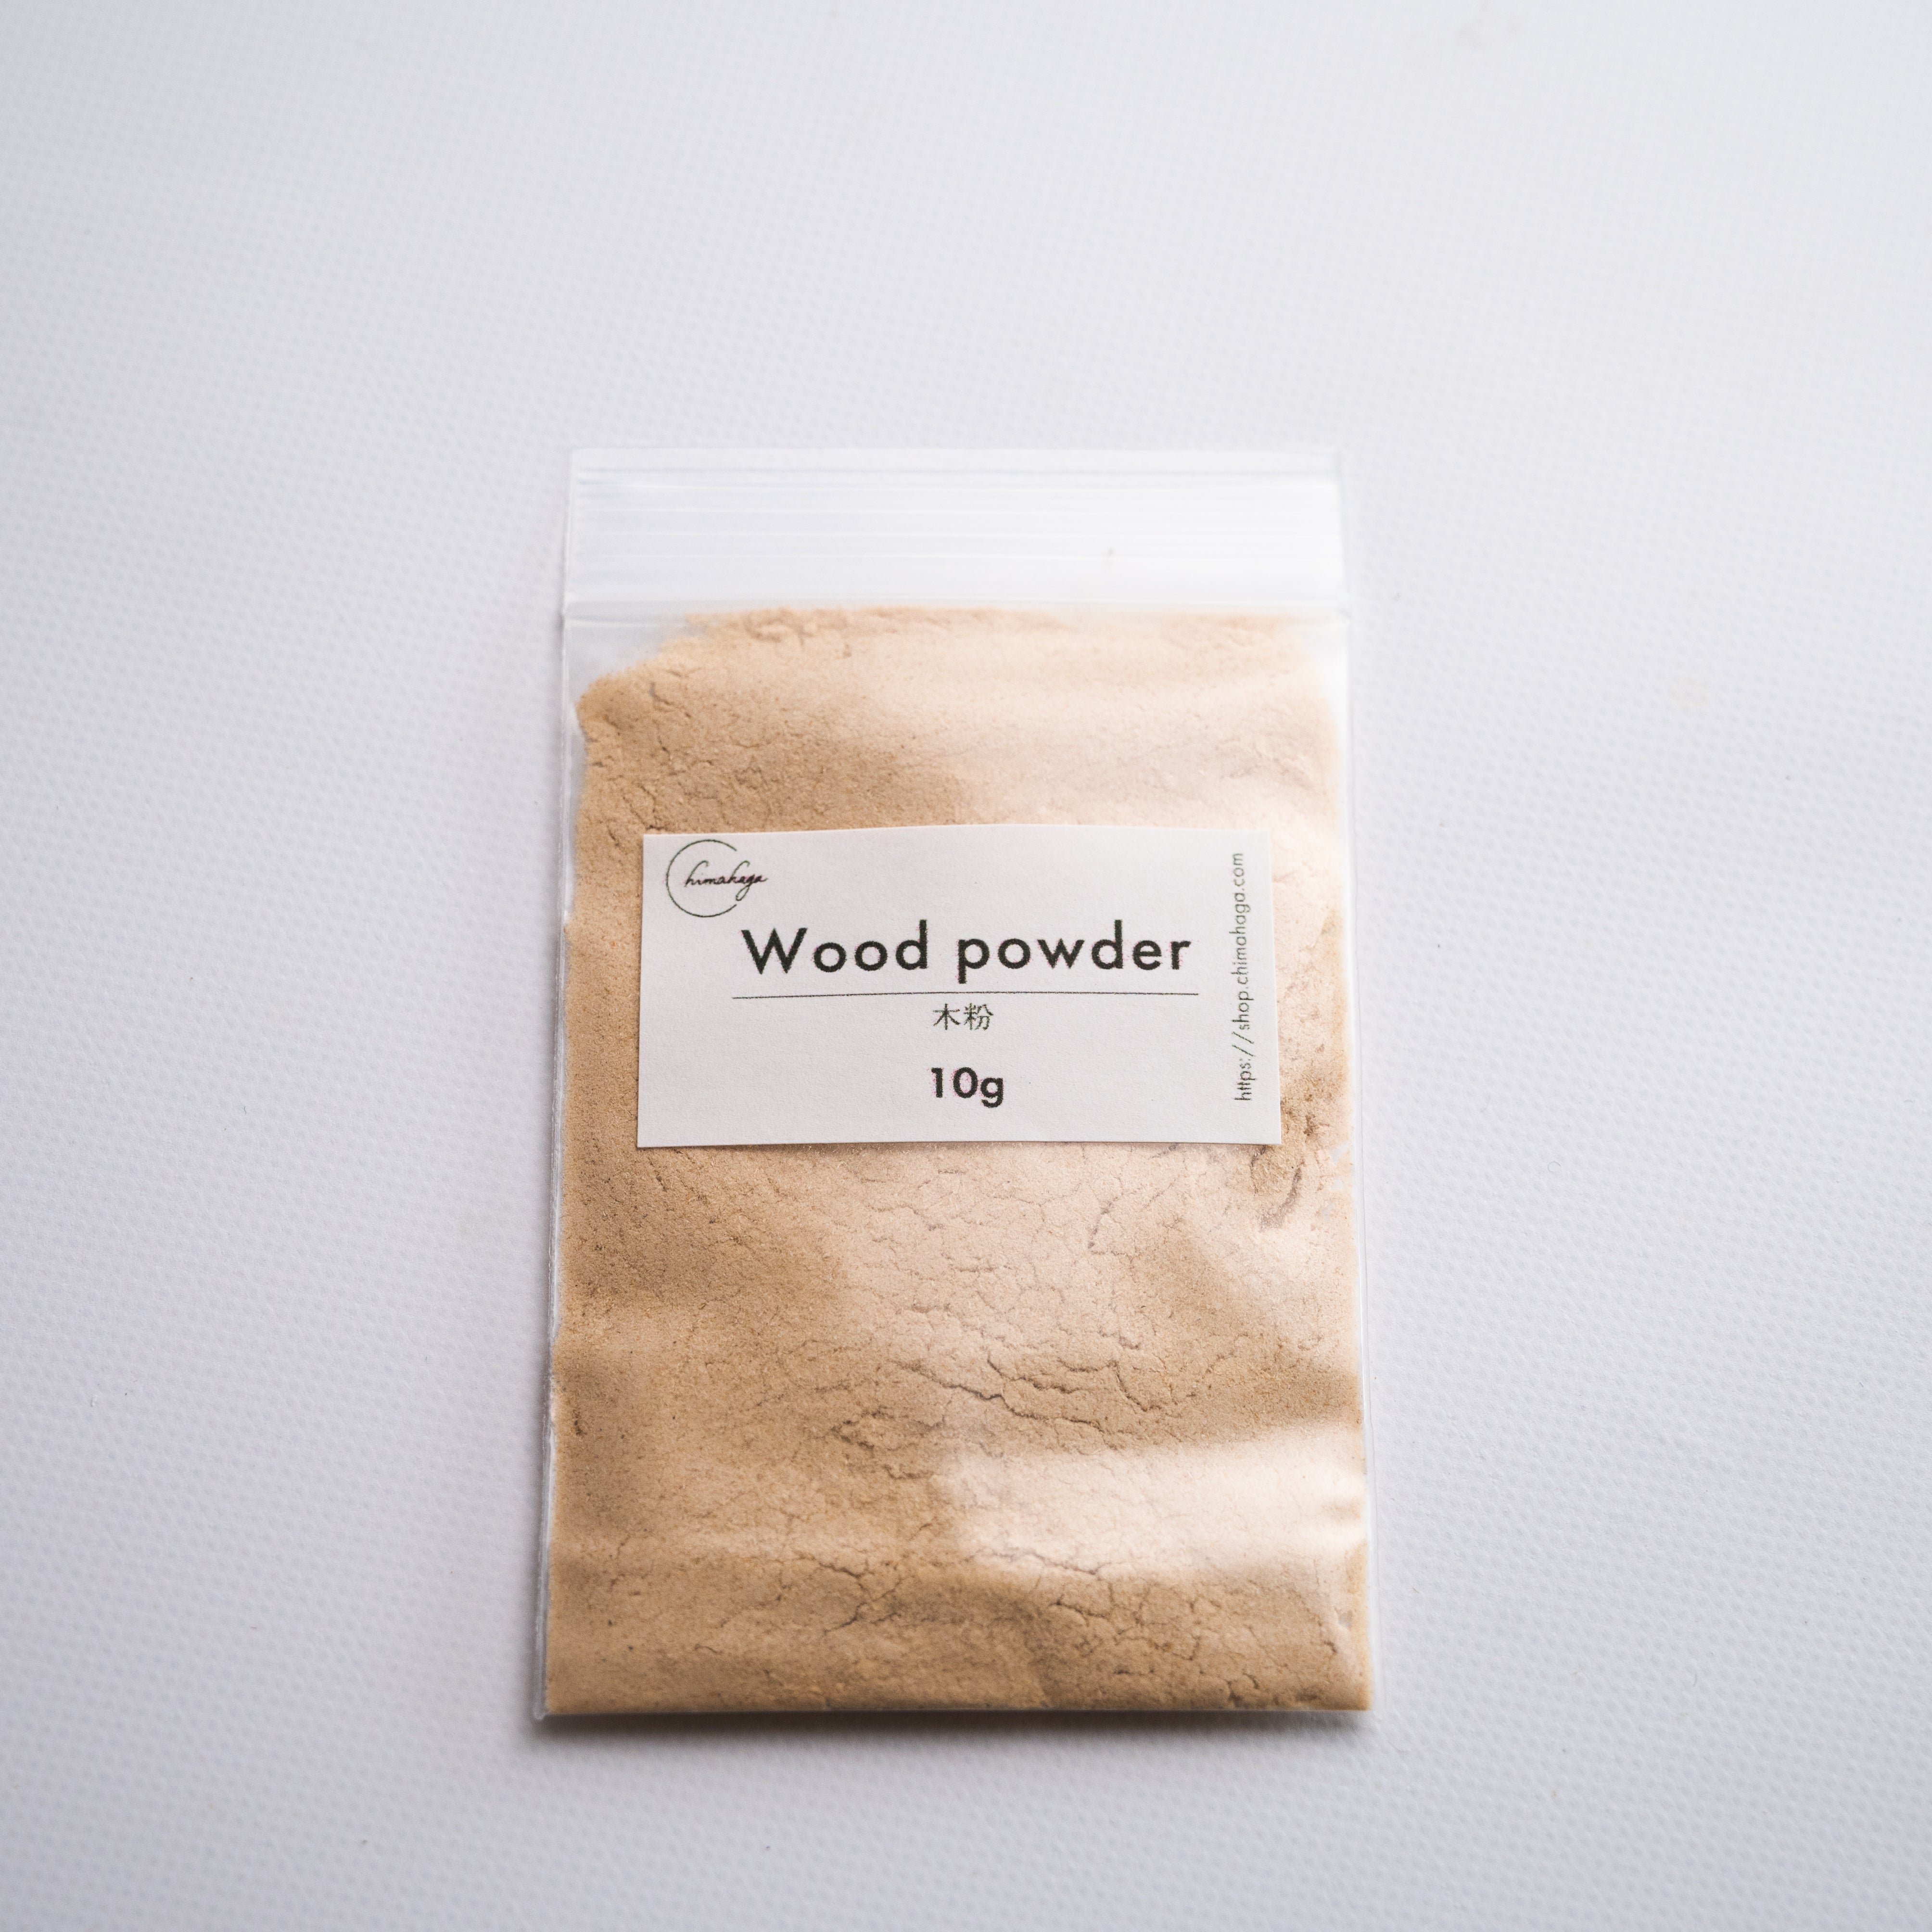 Wood powder 10g